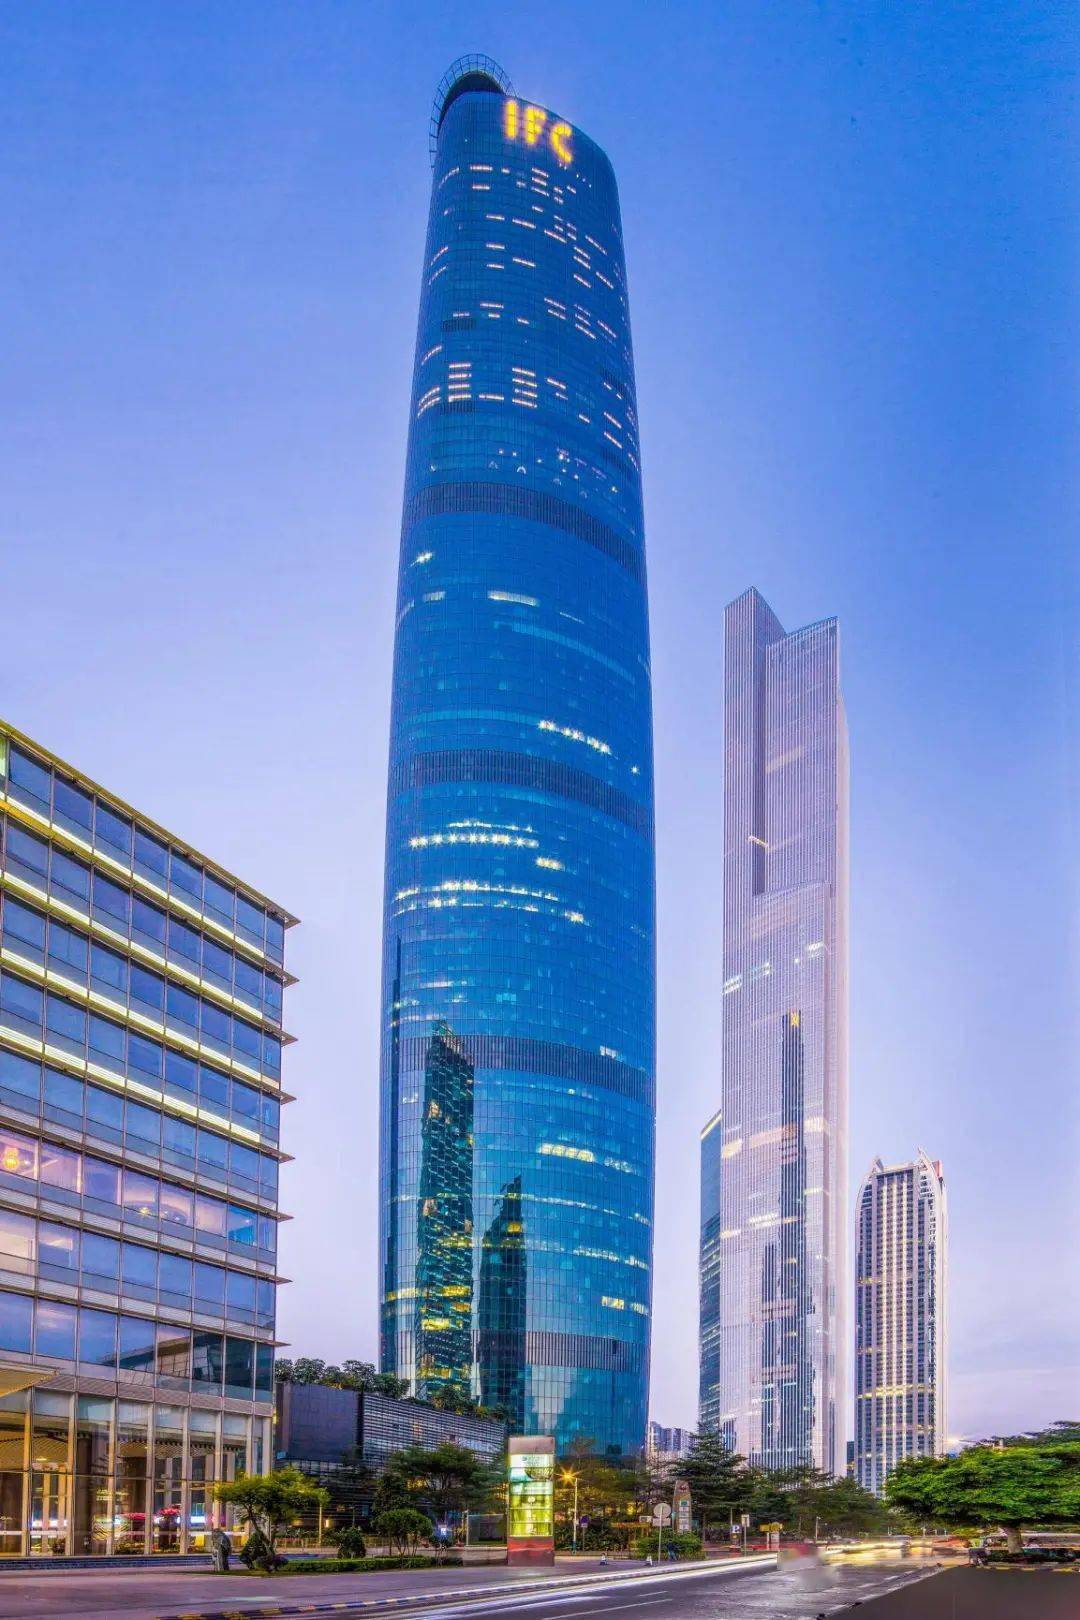 5米 城市:广州东莞国贸中心高度:423米 城市:东莞上海金茂大厦高度